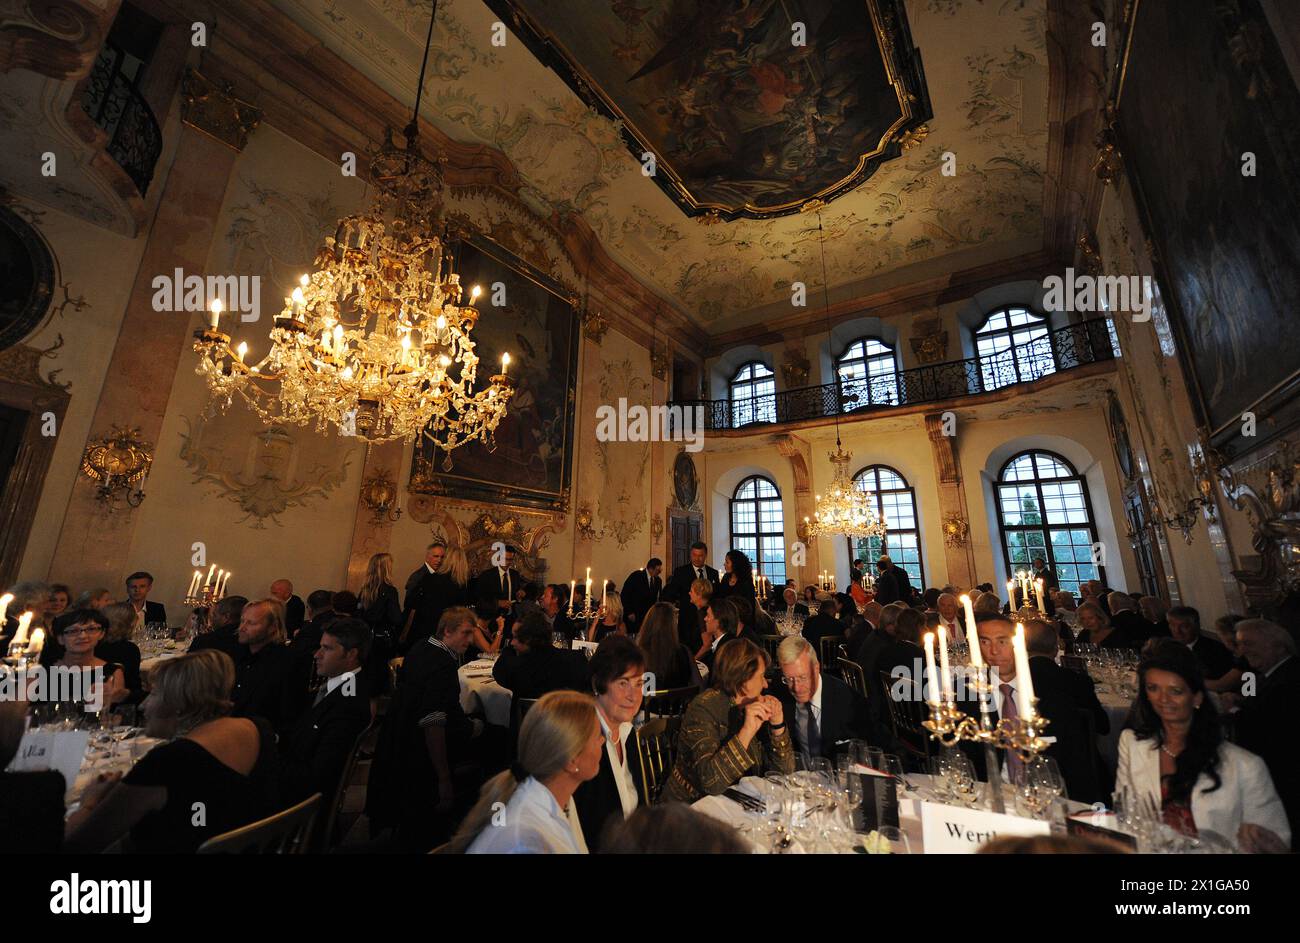 Salzbourg - présentation du nouveau livre de cuisine 'Die Oper kocht' lors d'un dîner de gala-bénéfice en soutien au SOS-Kinderdorf, Clearing-House Salzbourg, qui s'est tenu au Schloss Leopoldskron le 5 août 2010. - 20100805 PD5847 - Rechteinfo : droits gérés (RM) Banque D'Images